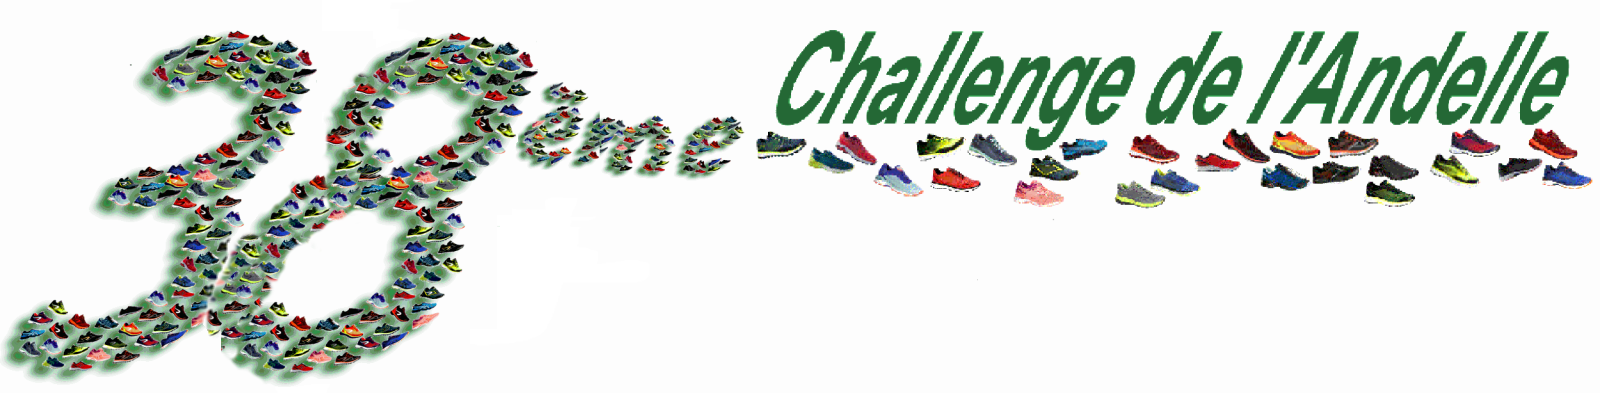 37eme Challenge de l'Andelle